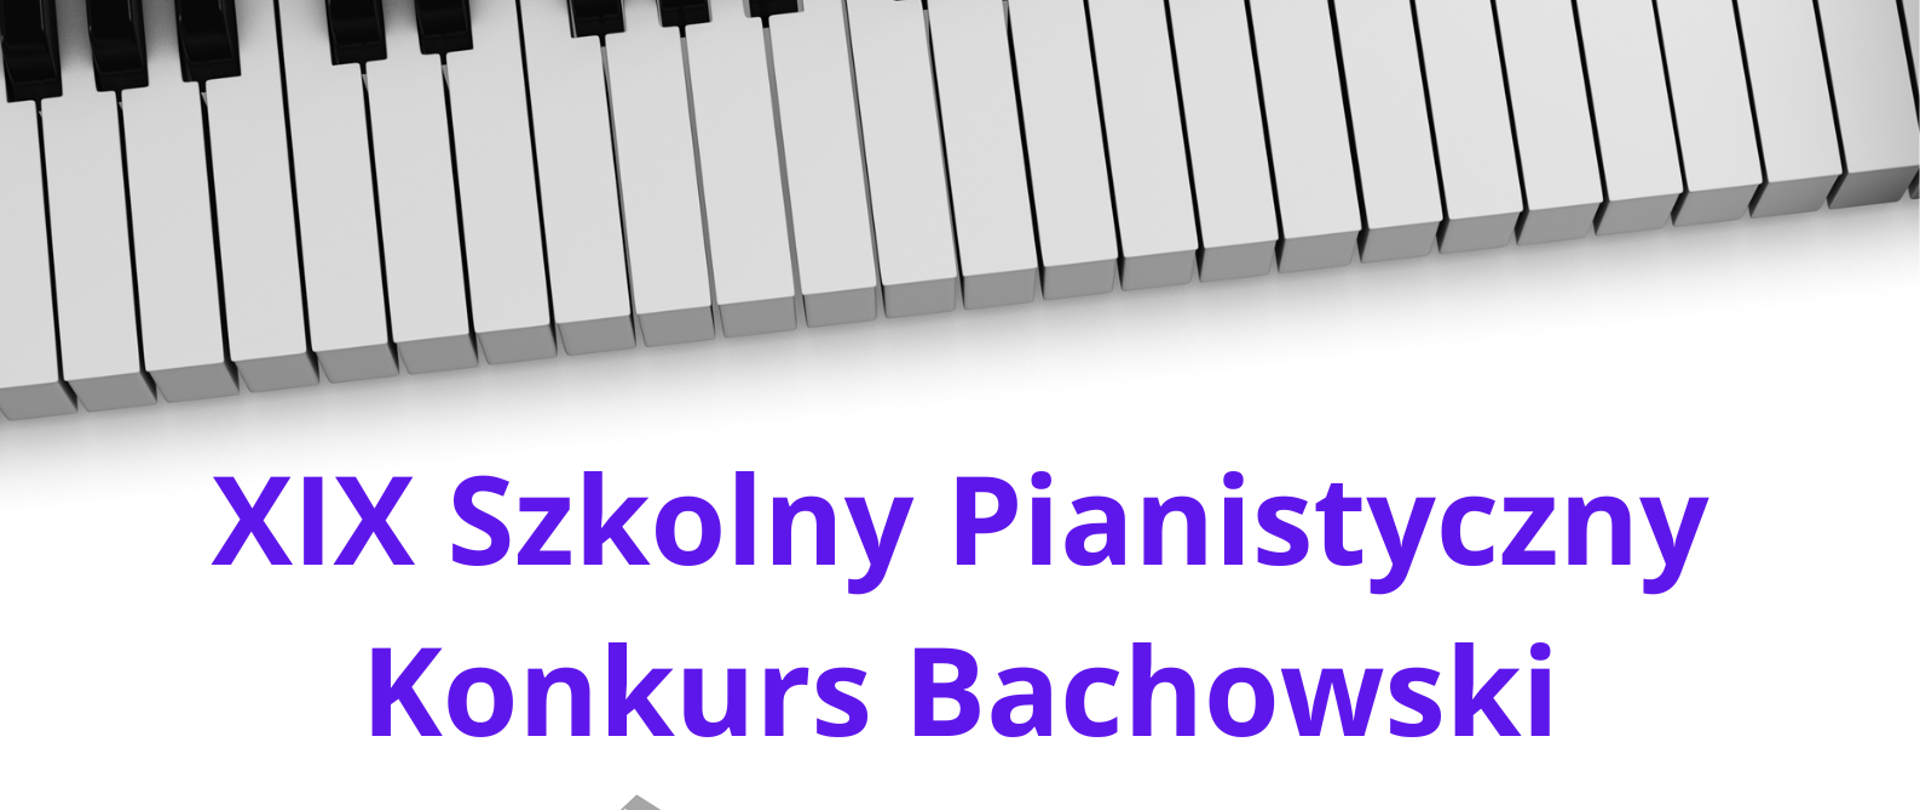 Zdjęcie przedstawia grafikę biało-czarnej klawiatury oraz nut oraz napis XIX Szkolny Pianistyczny Konkurs Bachowski, termin konkursu 22 kwietnia 2024 godz. 16.00